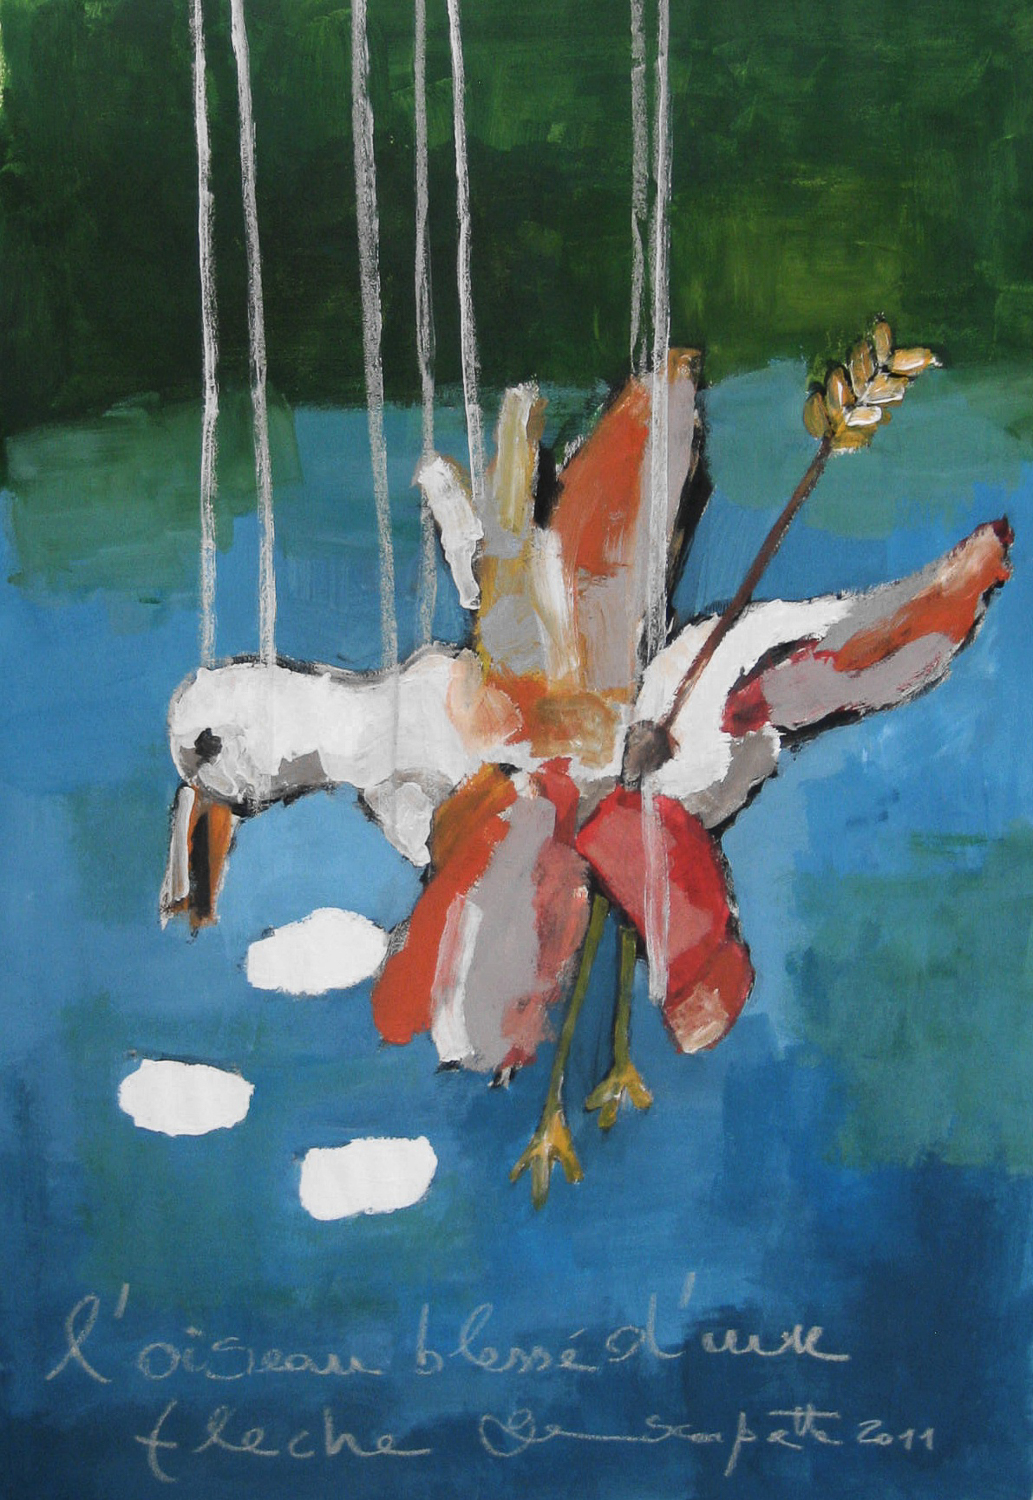 l'oiseau blessé d'une flèche, 50x70 cm, acrylique sur papier/acrylic on paper